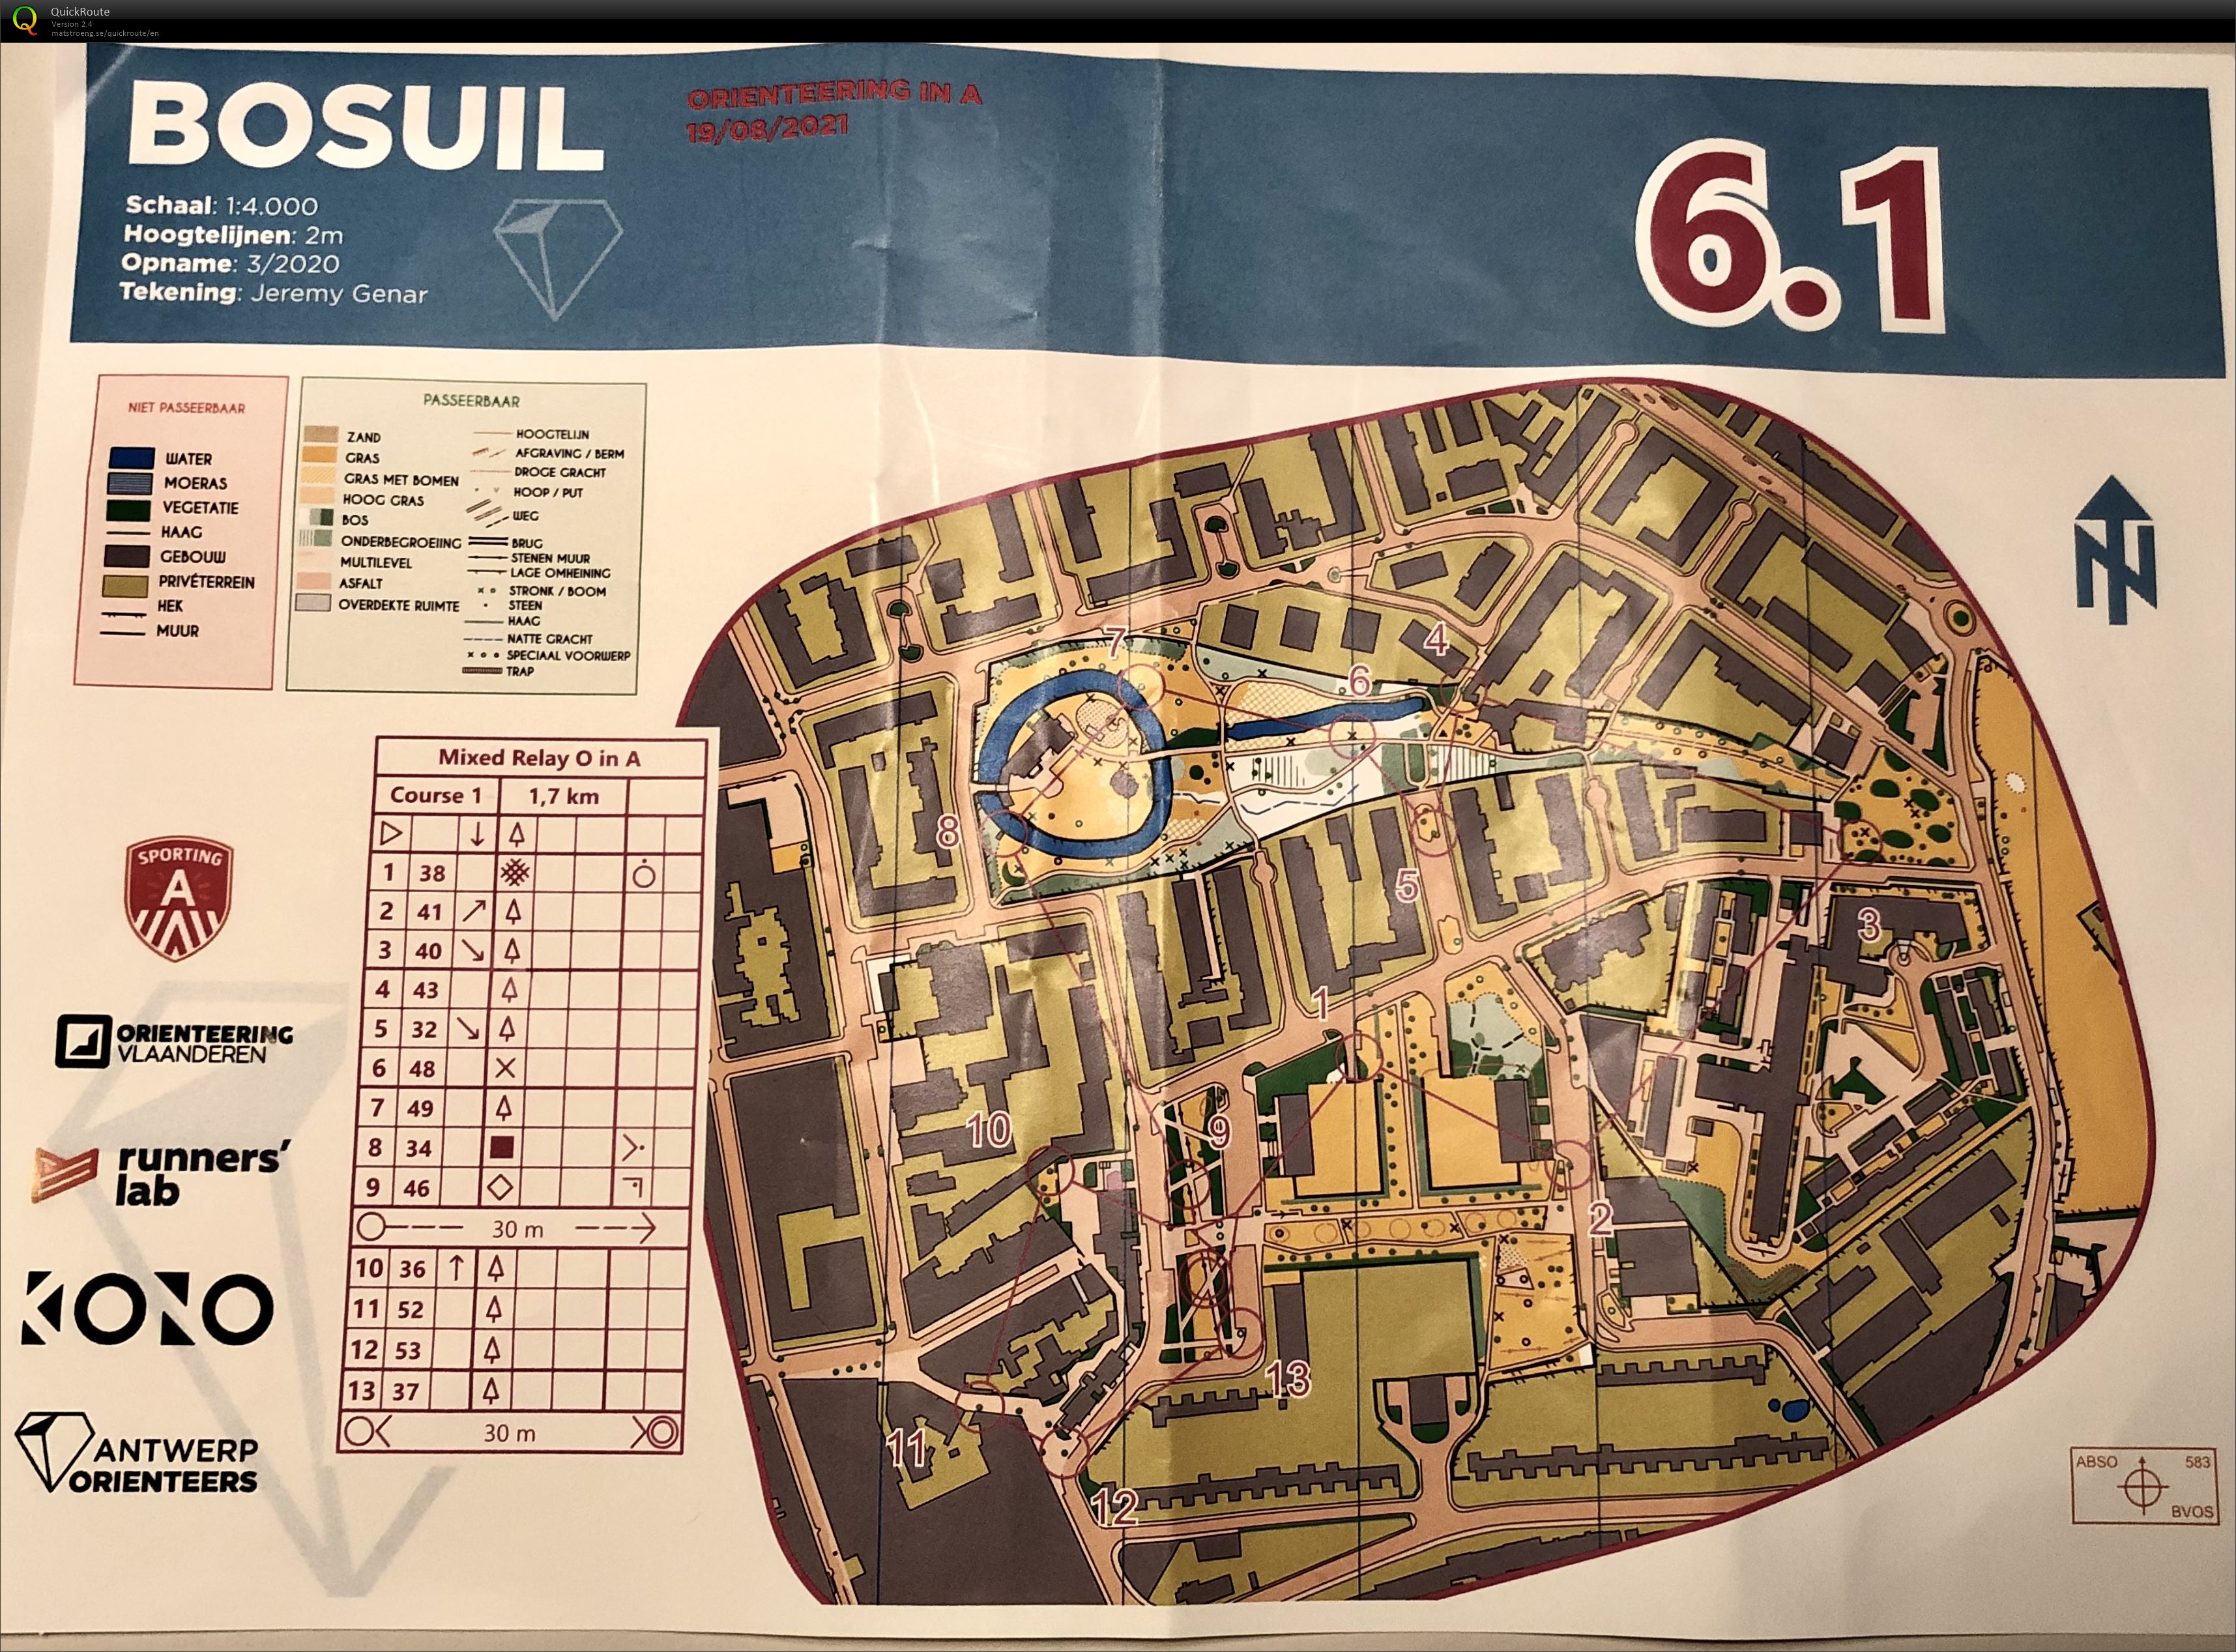 Antwerp Orienteers - Team Relay Bosuil 6.1 (2021-08-19)